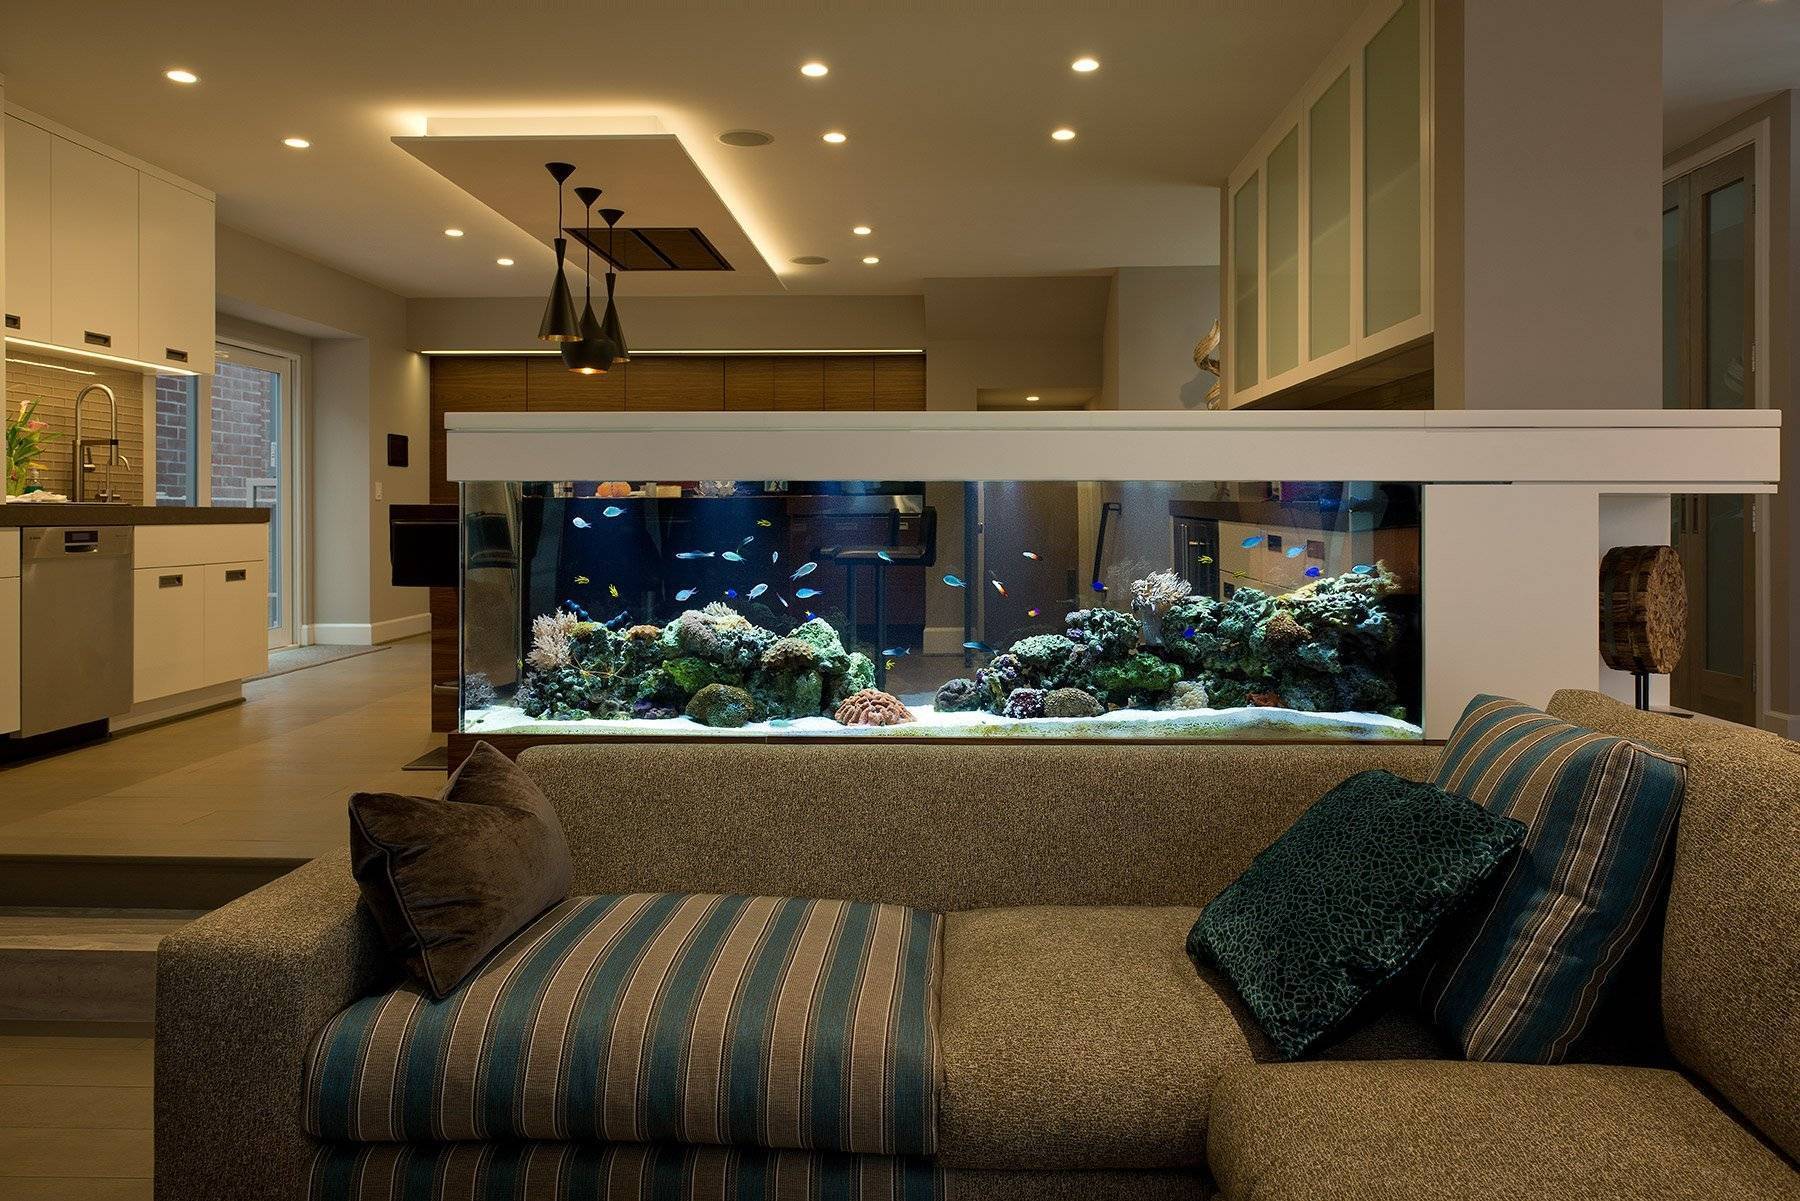 21 идея декораций для аквариума: делаем декор своими руками